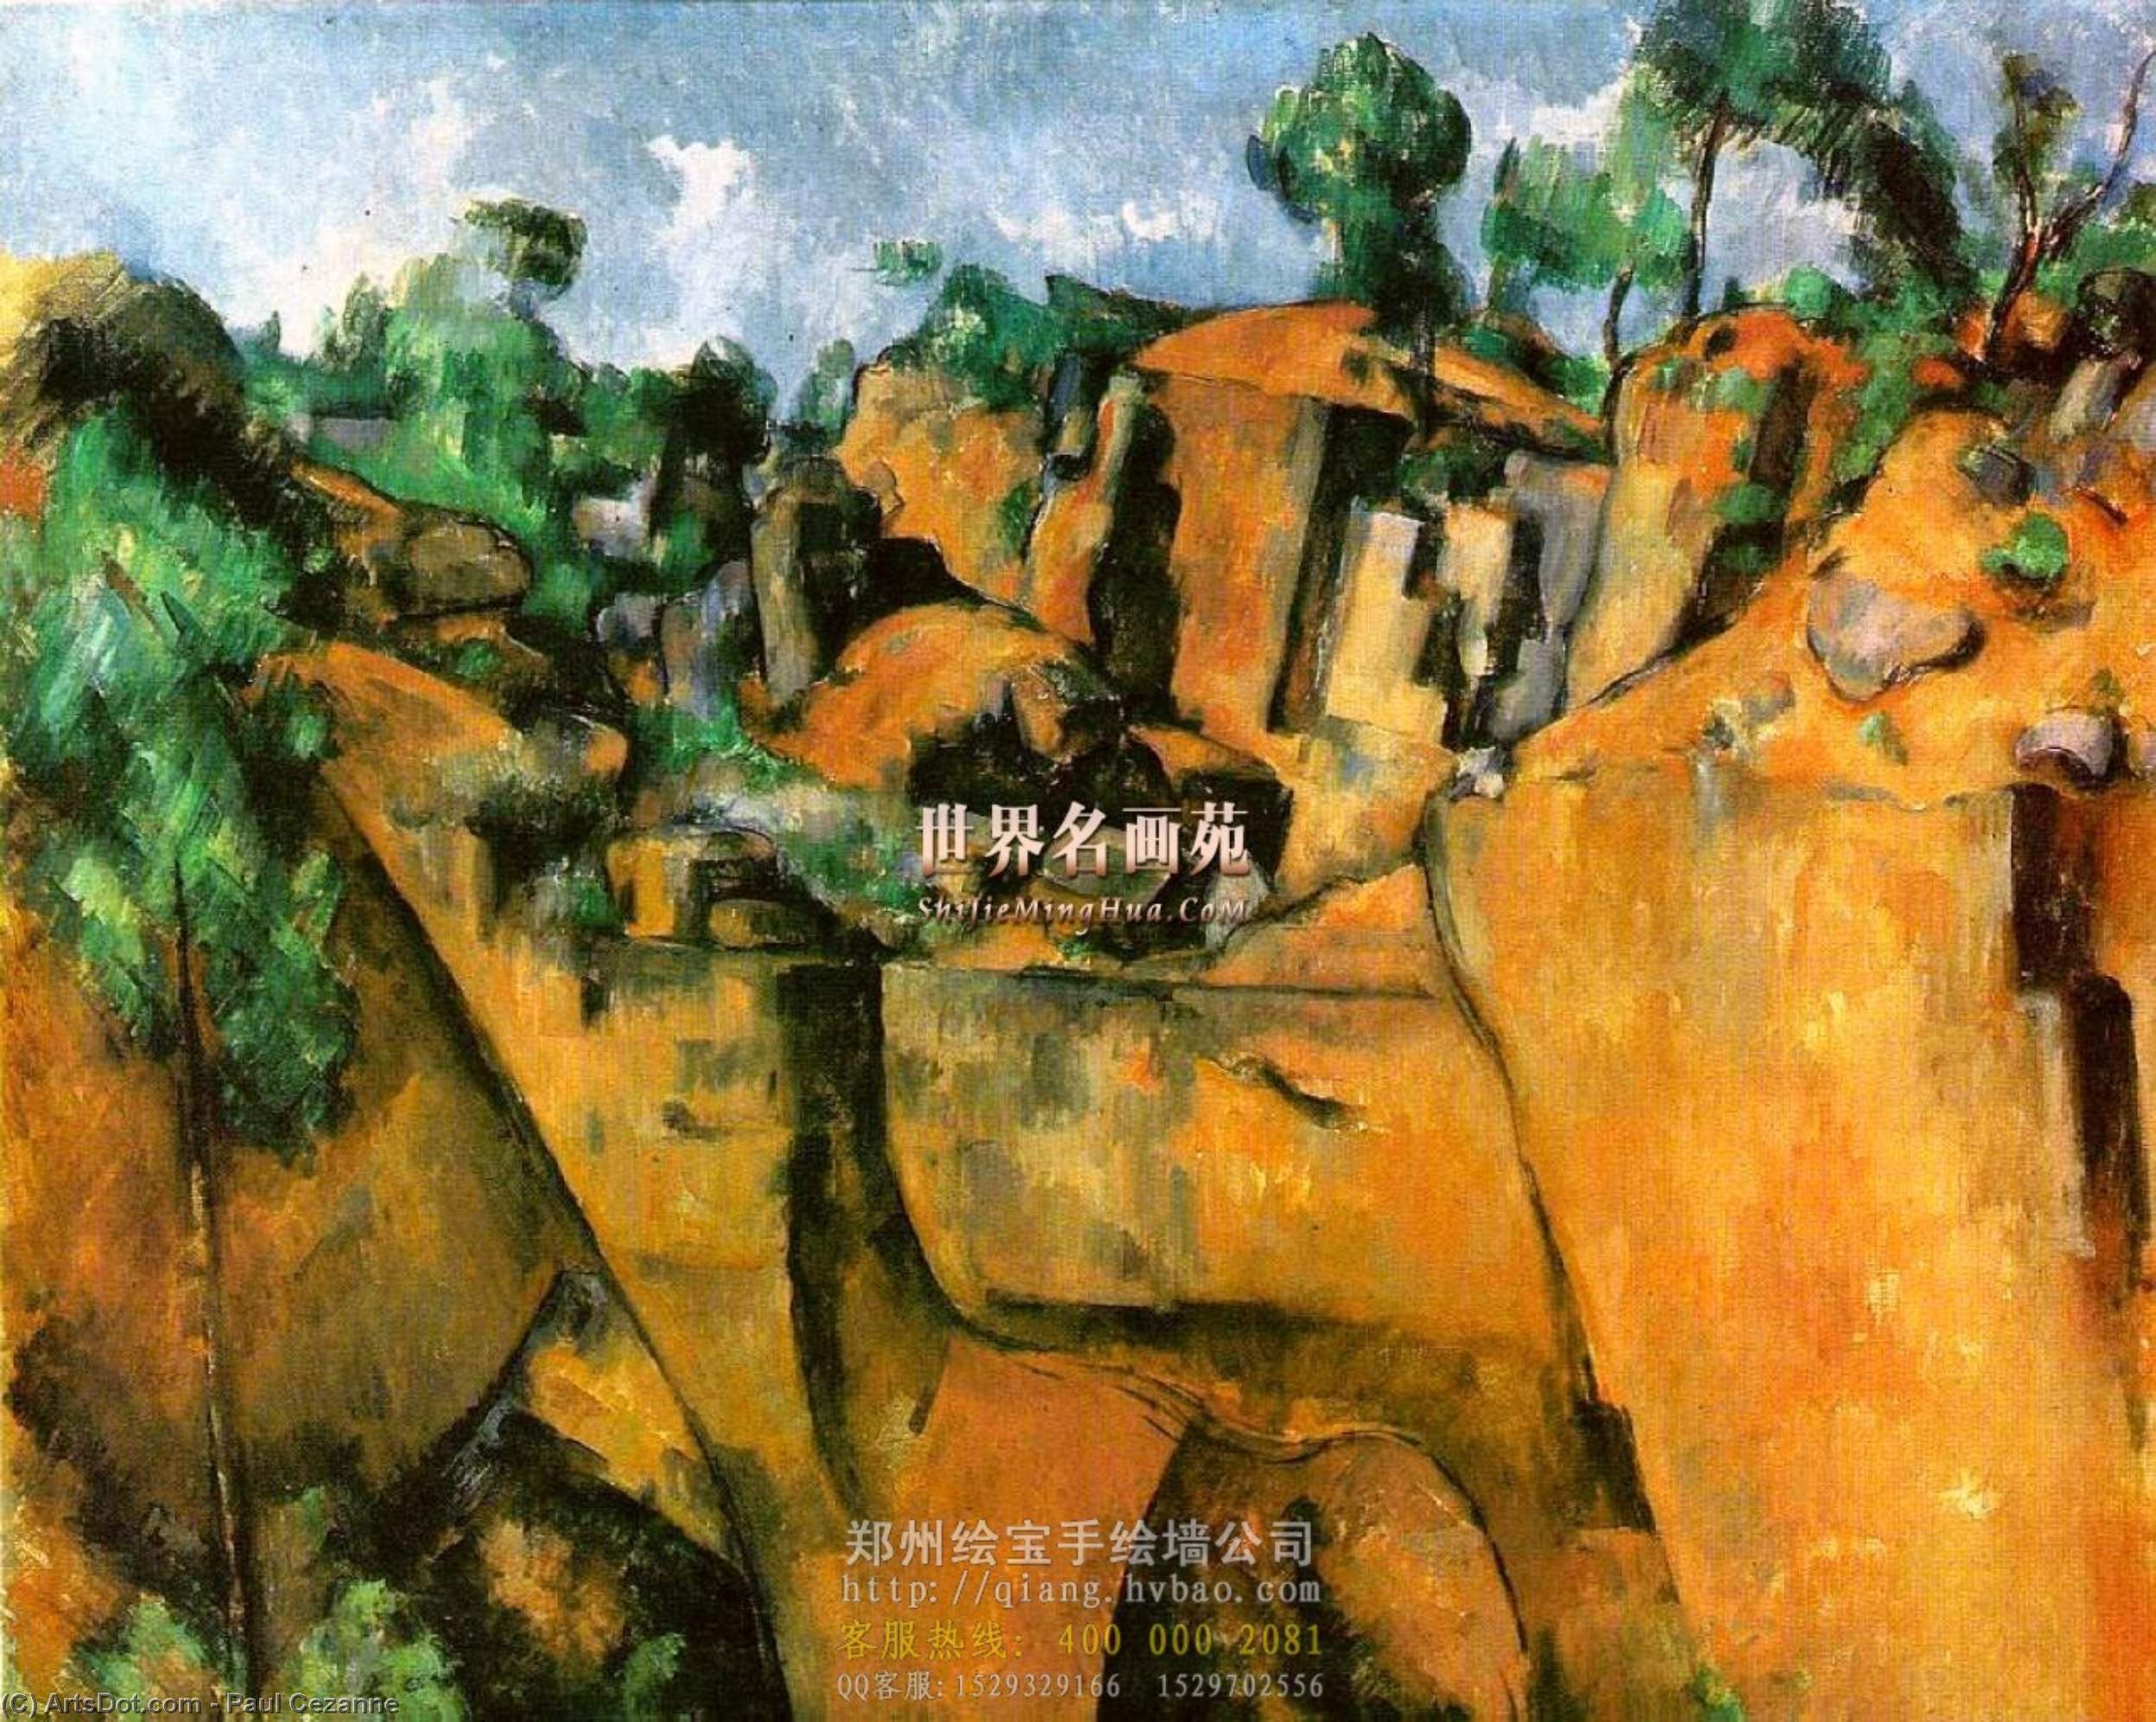 WikiOO.org - Енциклопедия за изящни изкуства - Живопис, Произведения на изкуството Paul Cezanne - Bibemus Quarry